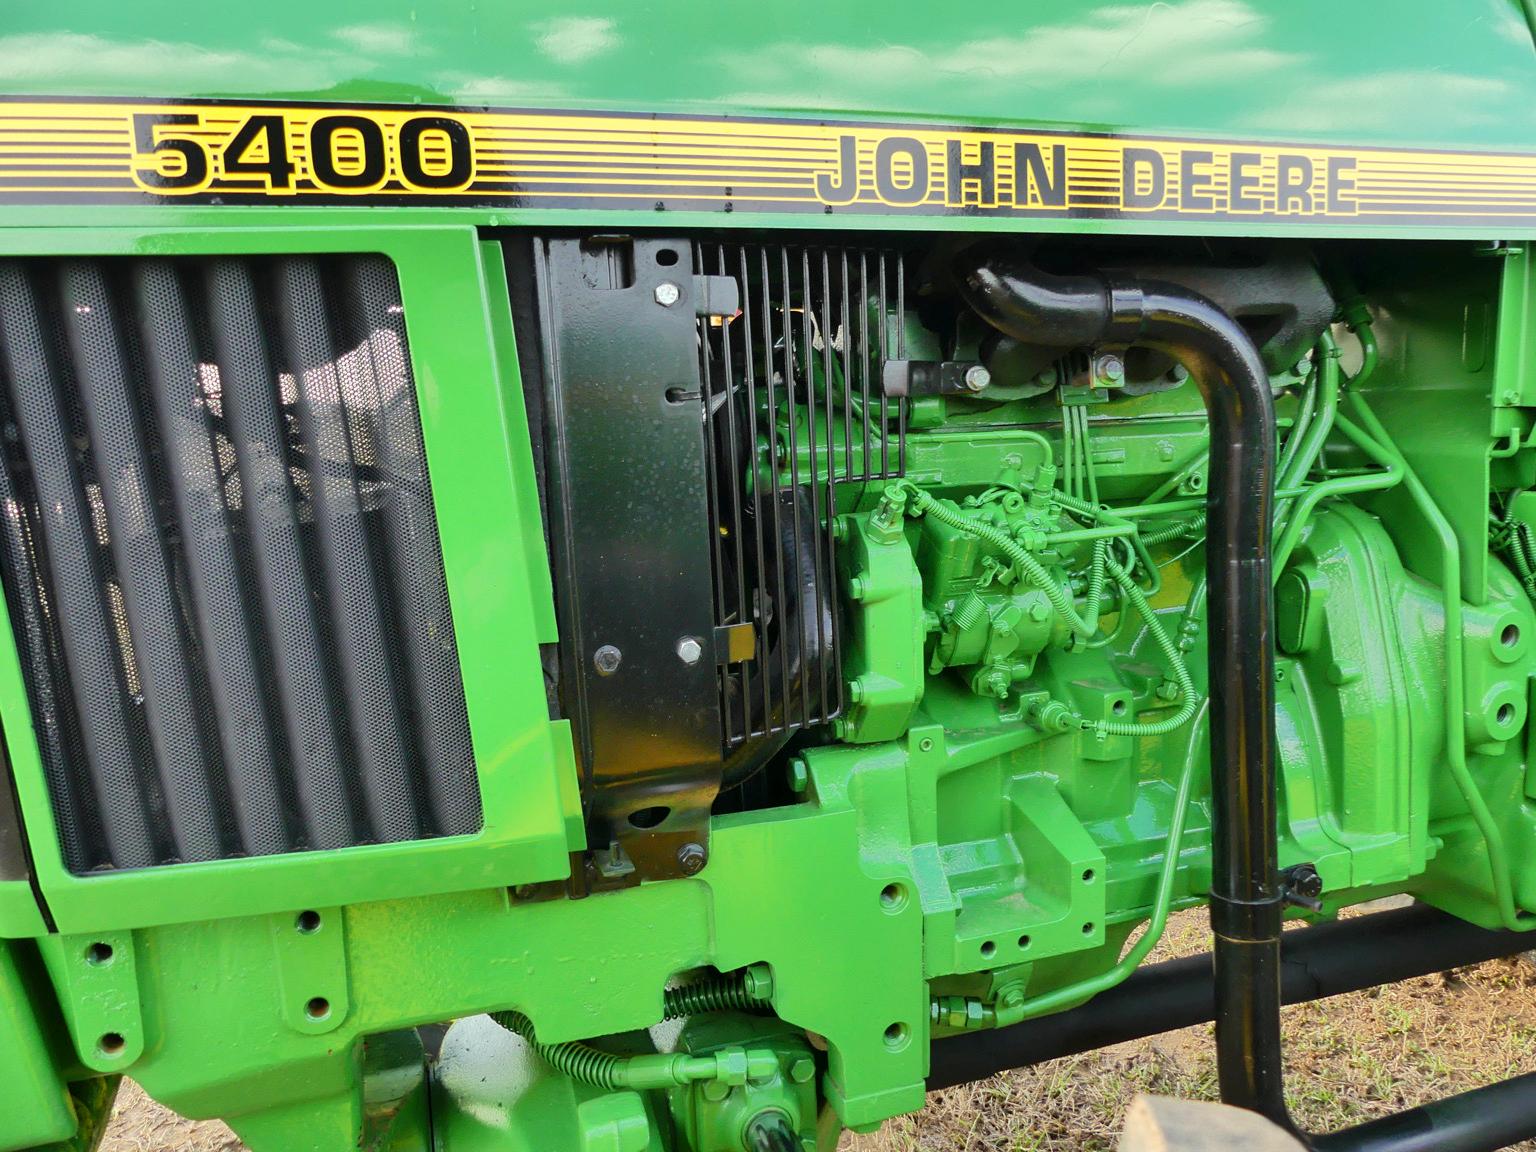 John Deere 5400 MFWD Tractor, s/n LV5400E642804: Meter Shows 9382 hrs